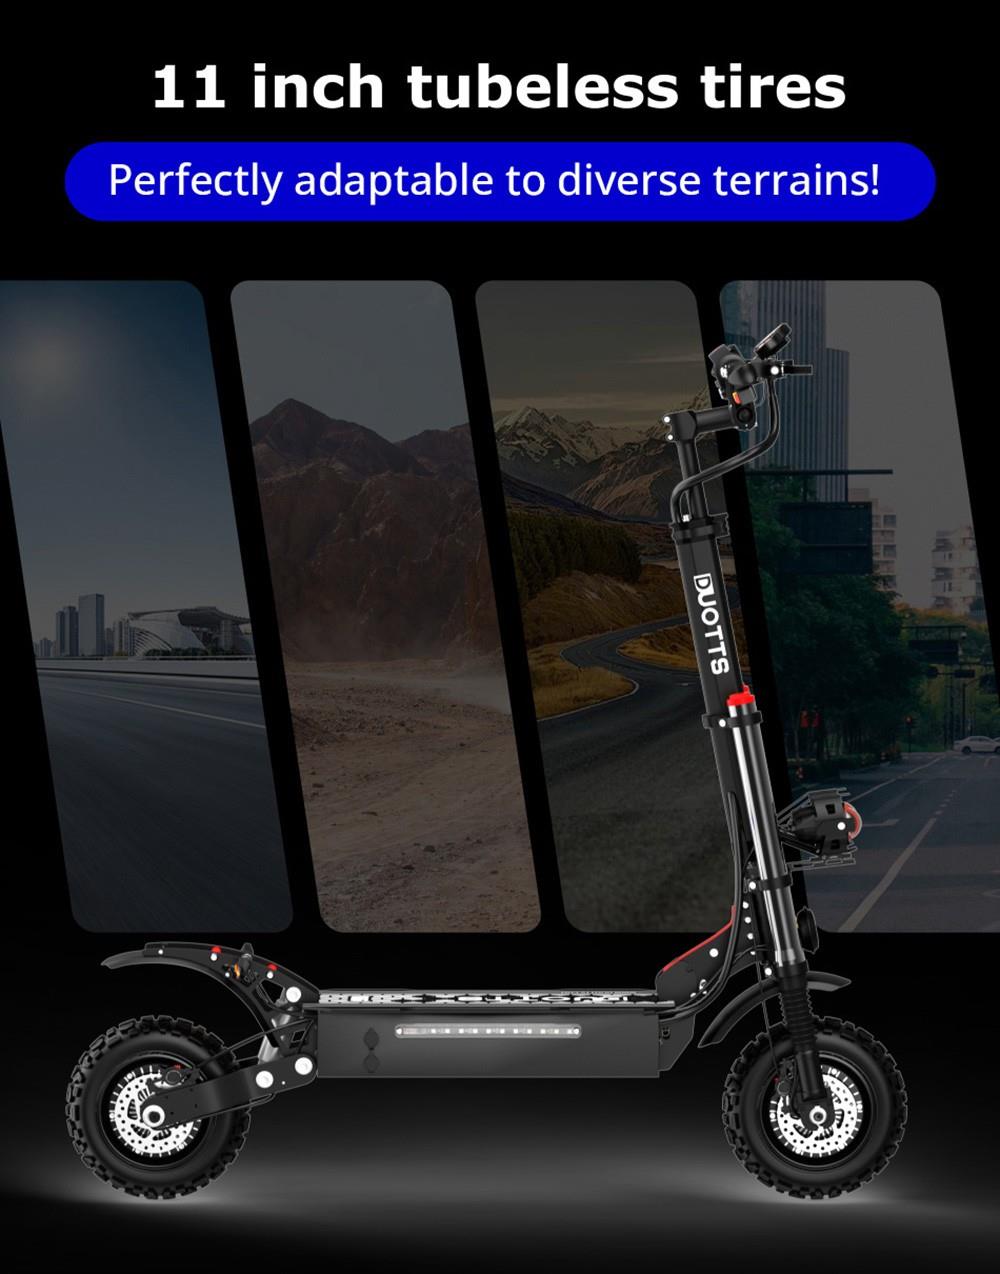 DUOTTS D66 elektrische scooter met richtingaanwijzers, 1800W * 2 motoren, 60V 24Ah batterij, 11 Off-road banden